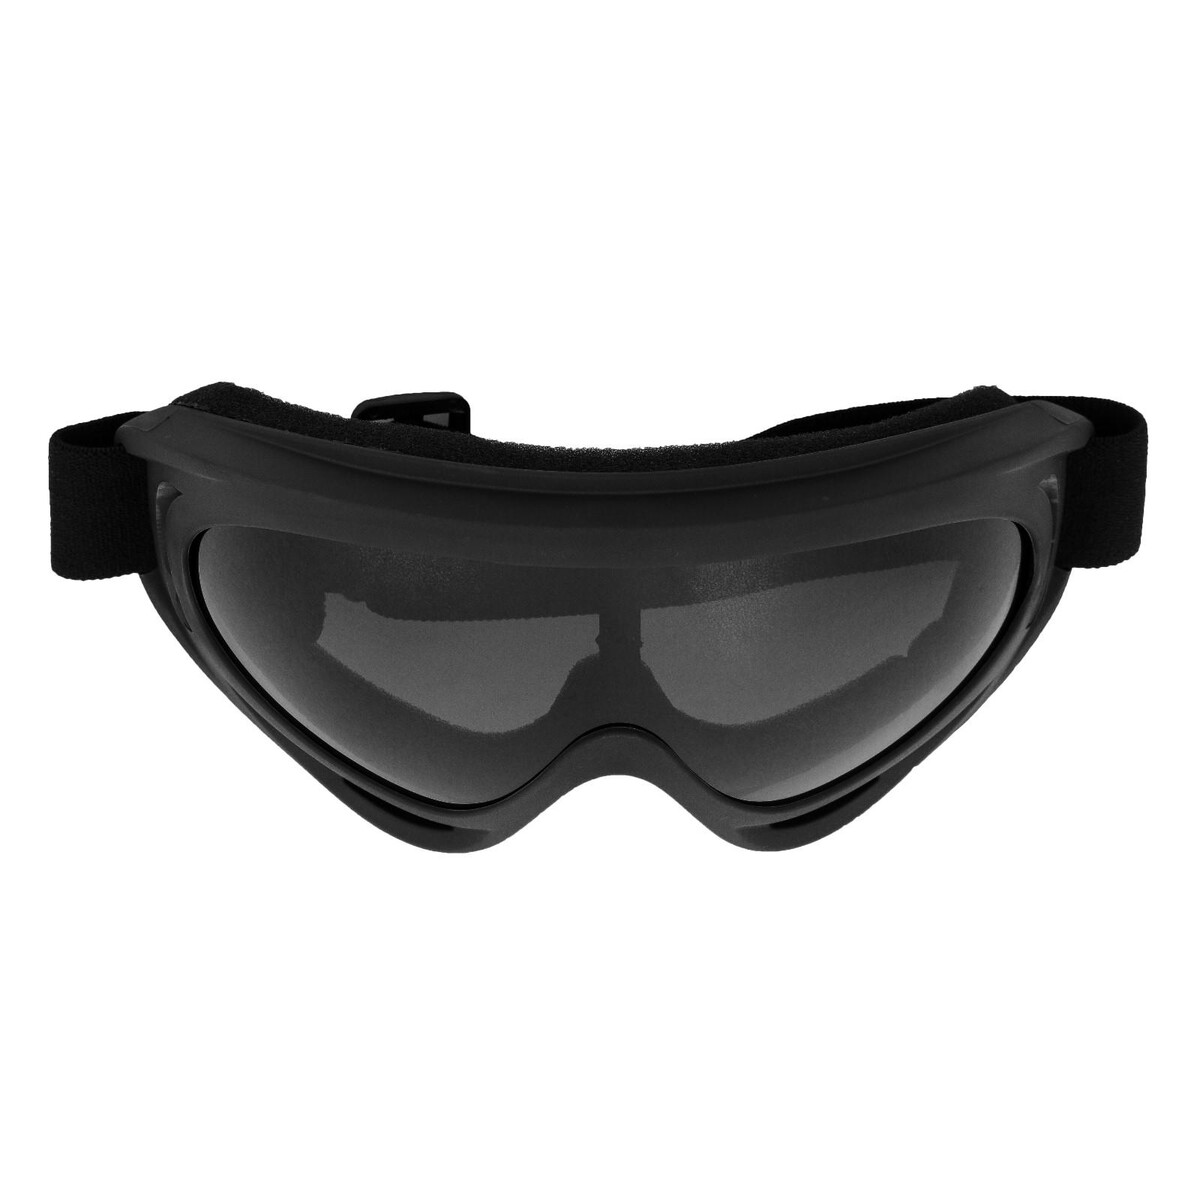 Очки для езды на мототехнике, стекло прозрачное серое, цвет черный очки маска со съемной защитой носа стекло прозрачное черные